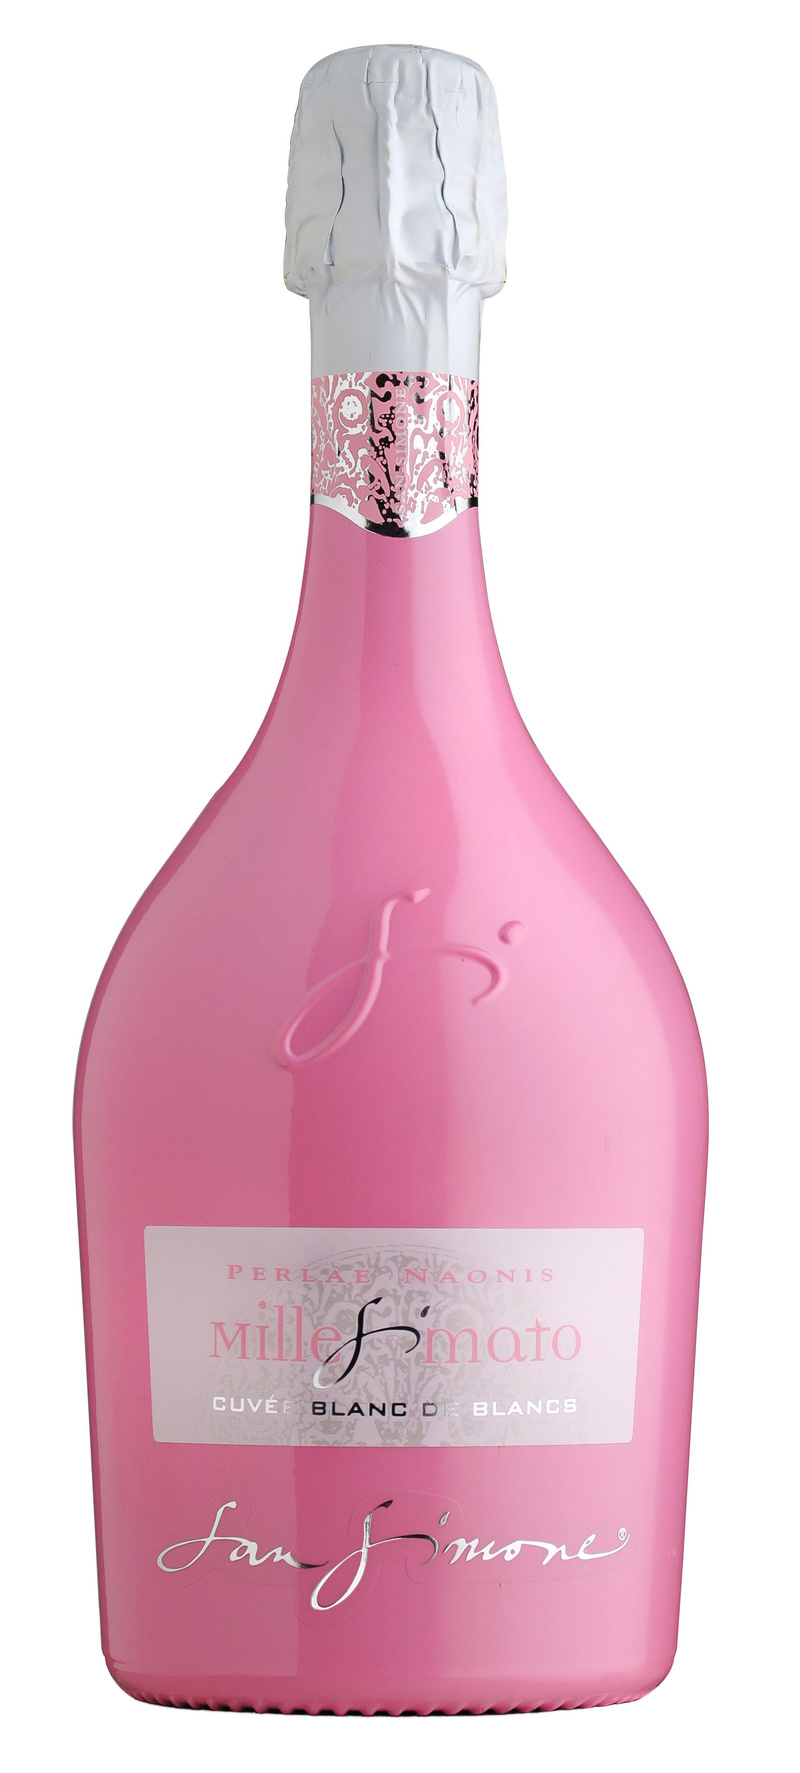 Cuvée Blanc de Blancs Millesimato Brut D.O.C. Pink edition SAN SIMONE 0,75l